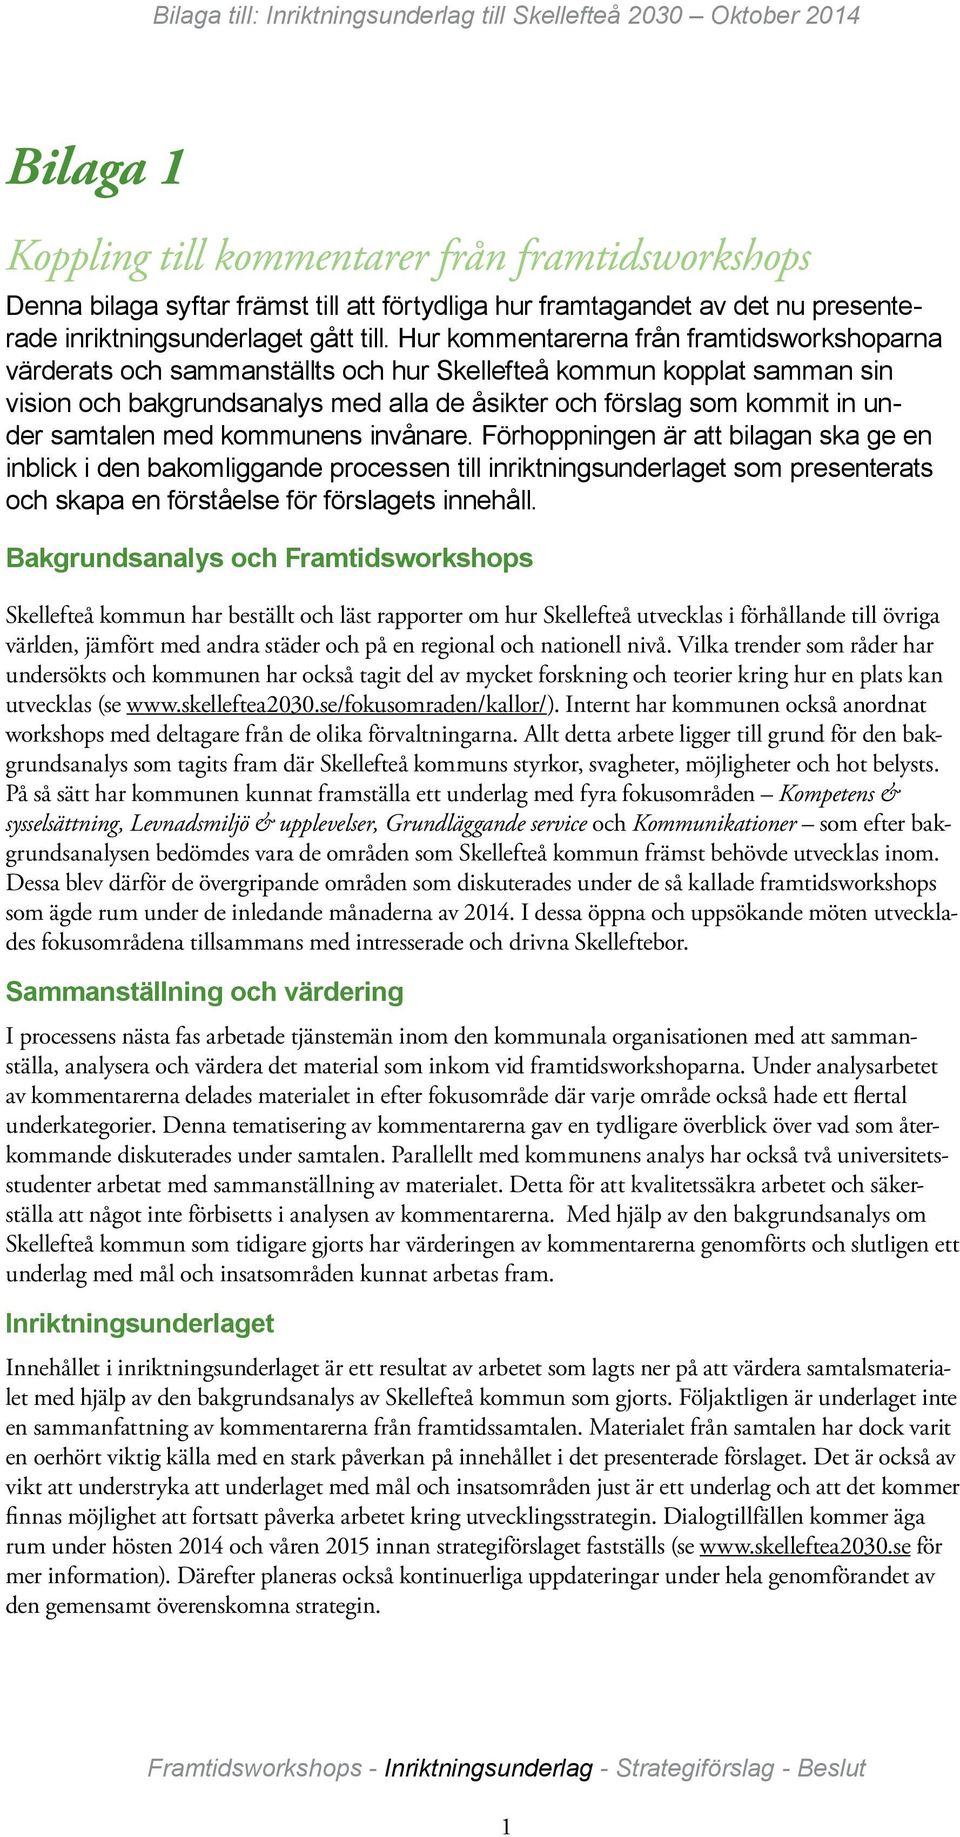 Hur kommentarerna från framtidsworkshoparna värderats och sammanställts och hur Skellefteå kommun kopplat samman sin vision och bakgrundsanalys med alla de åsikter och förslag som kommit in under